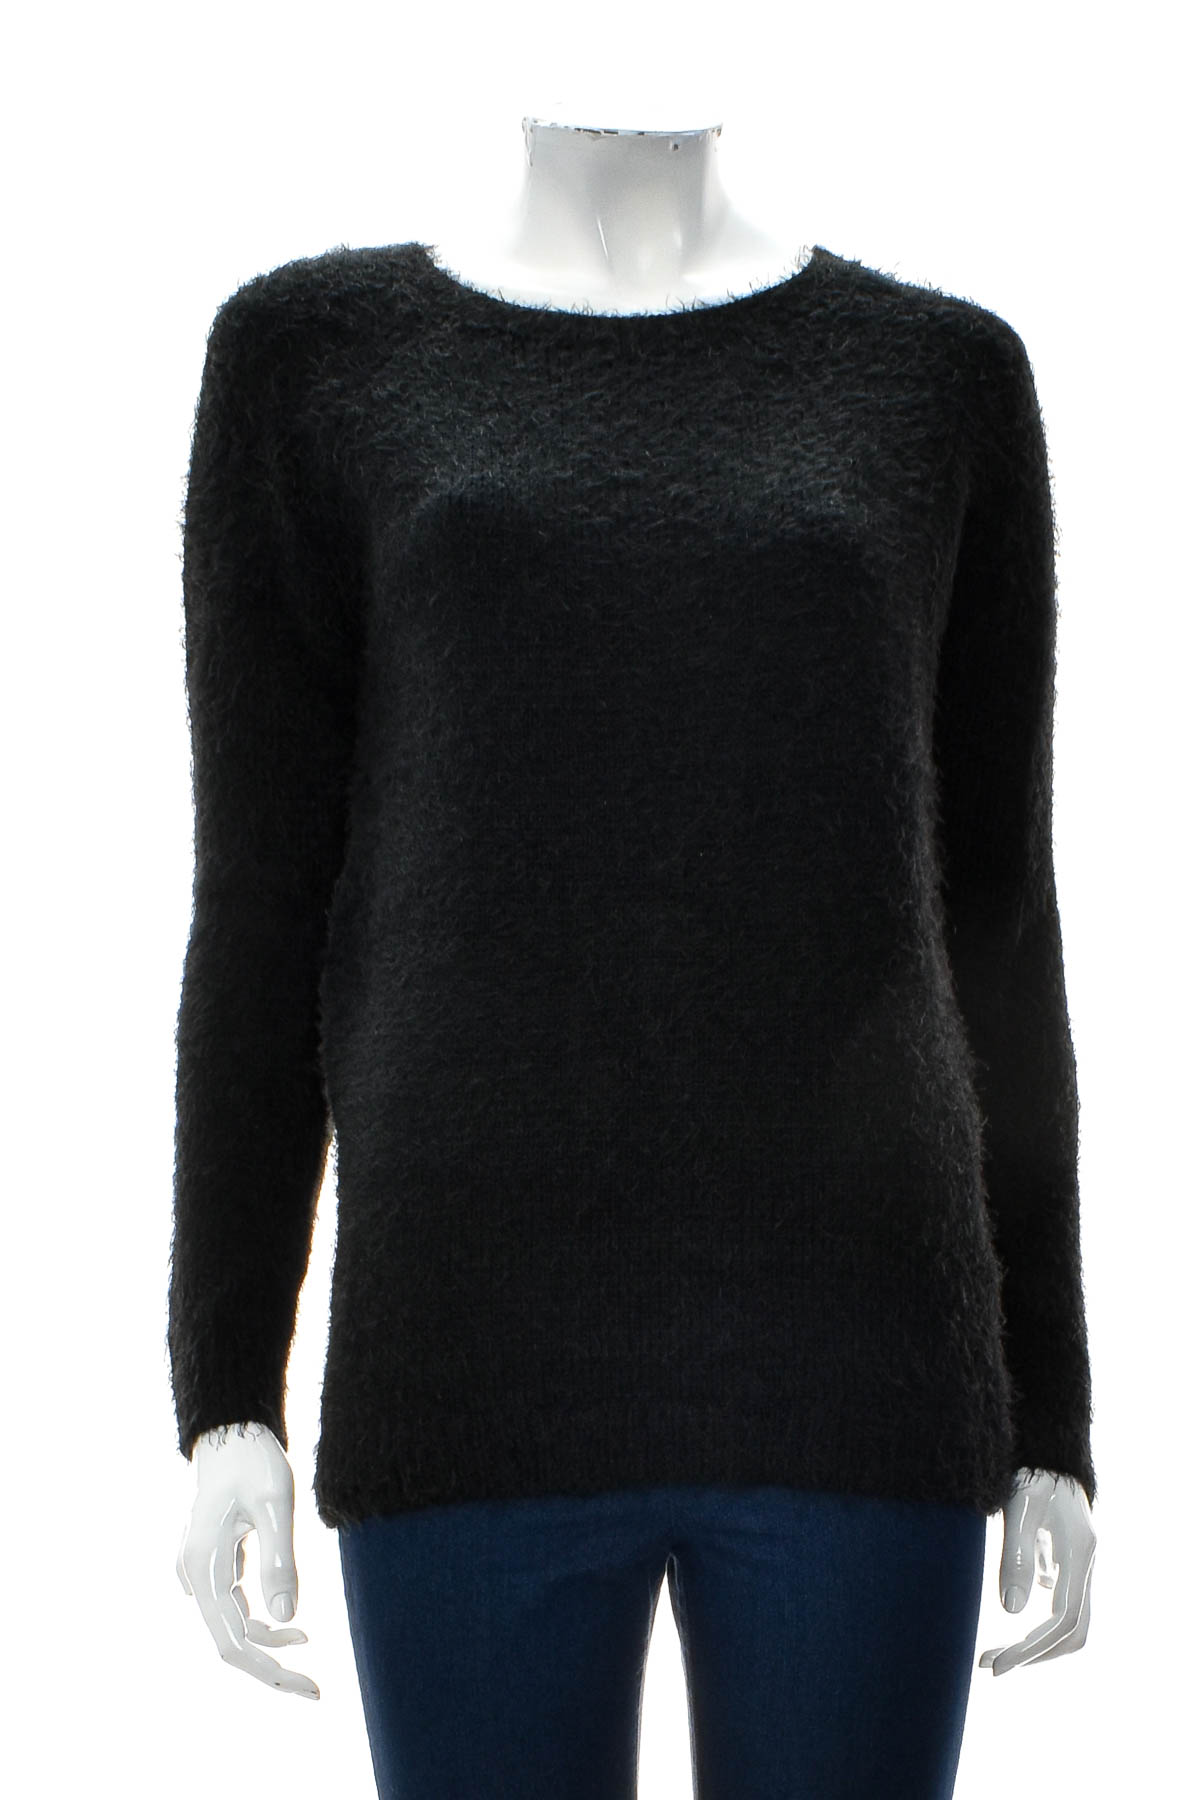 Women's sweater - Mooloola - 0